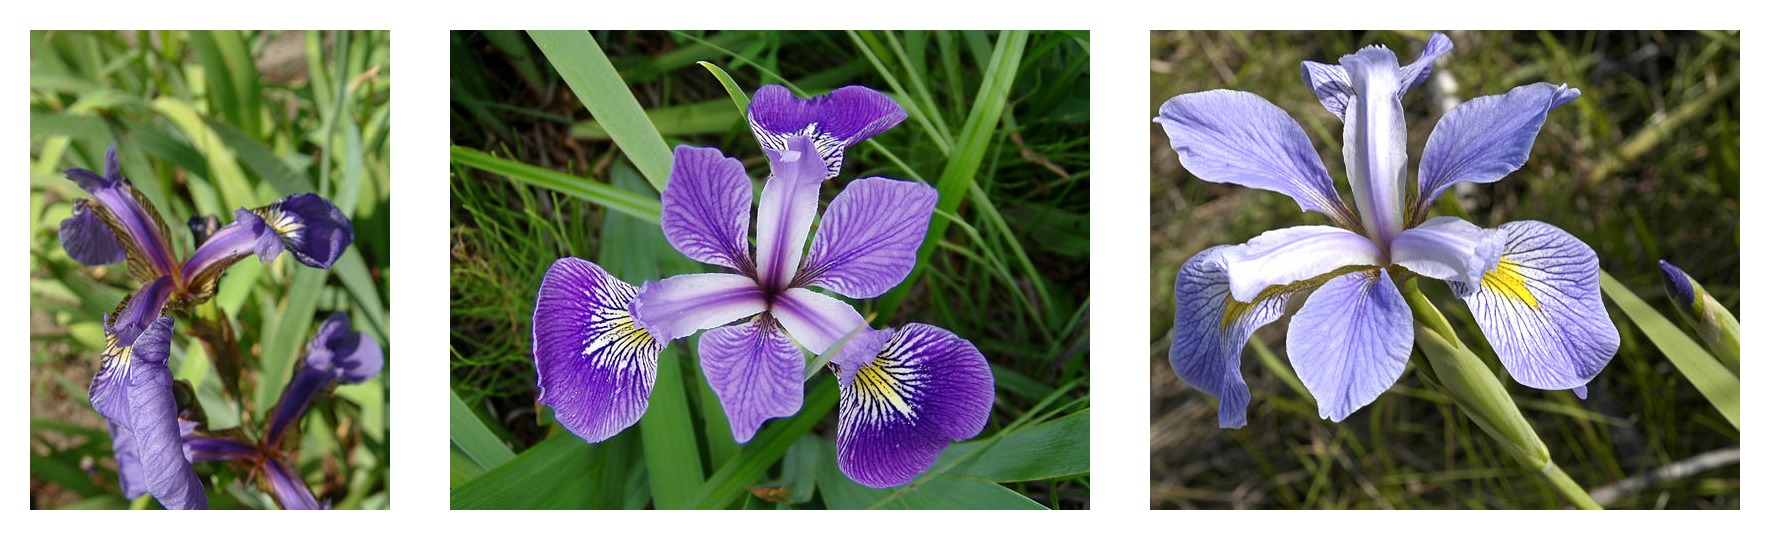 เรขาคณิตของกลีบดอกเปรียบเทียบกับม่านตาสามชนิด: Iris setosa, Iris virginica และ Iris versicolor